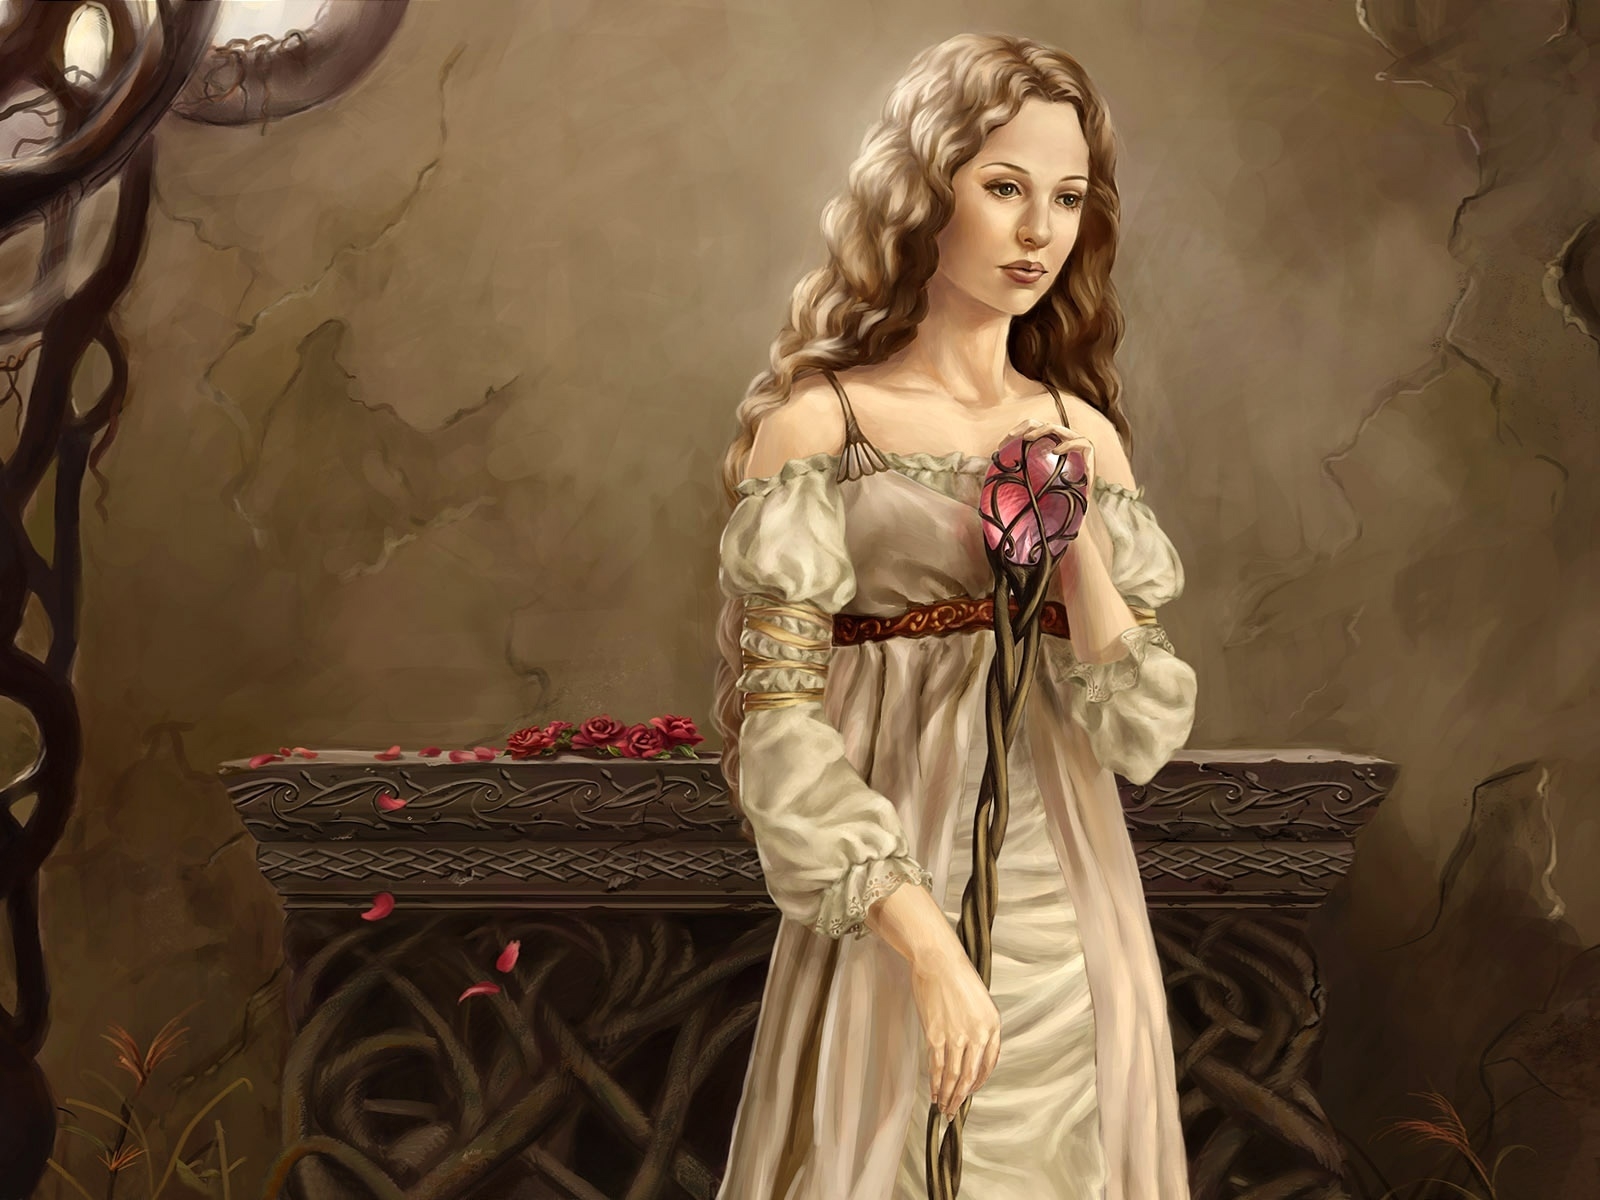 Fantasy Girl White Dress 2 for 1600 x 1200 resolution